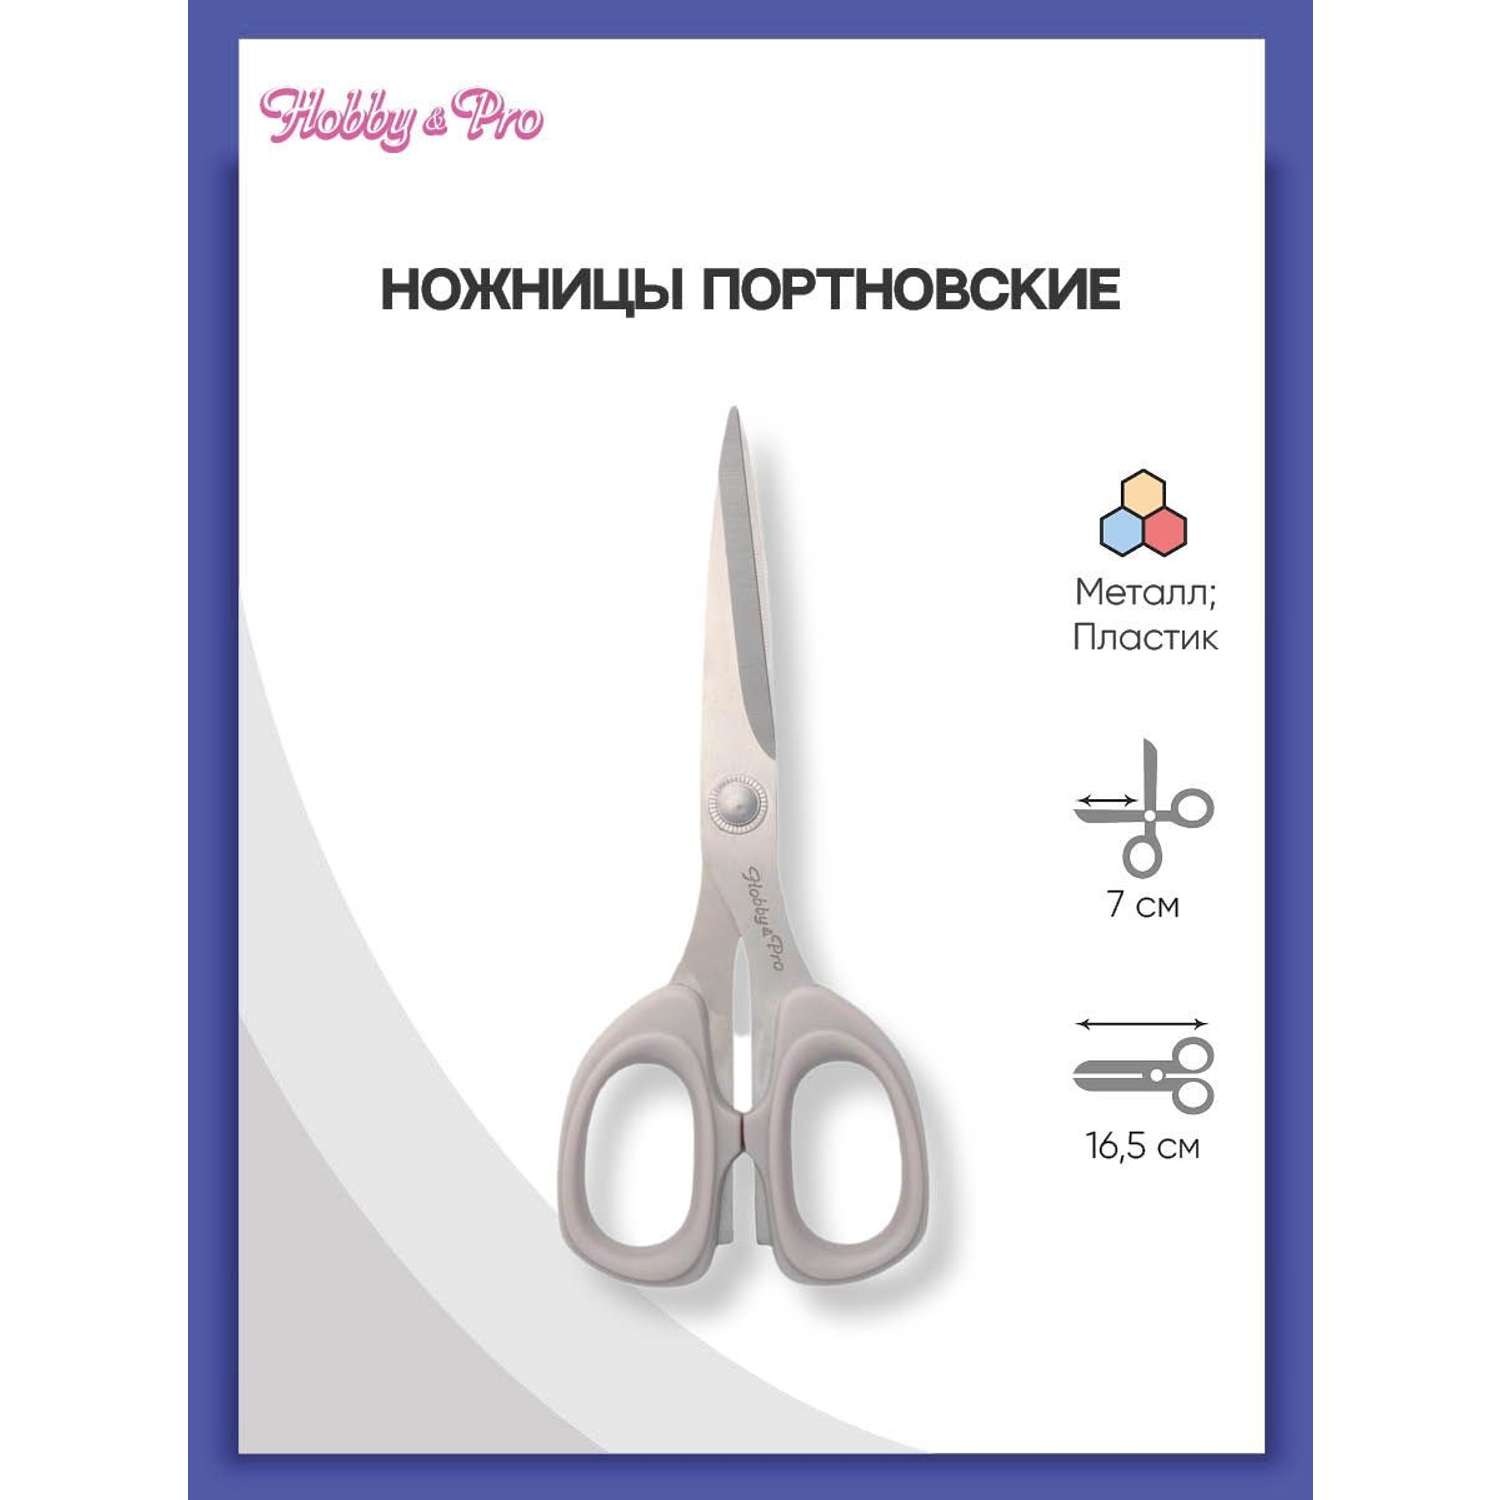 Ножницы портновские Hobby Pro 16.5 см - фото 1